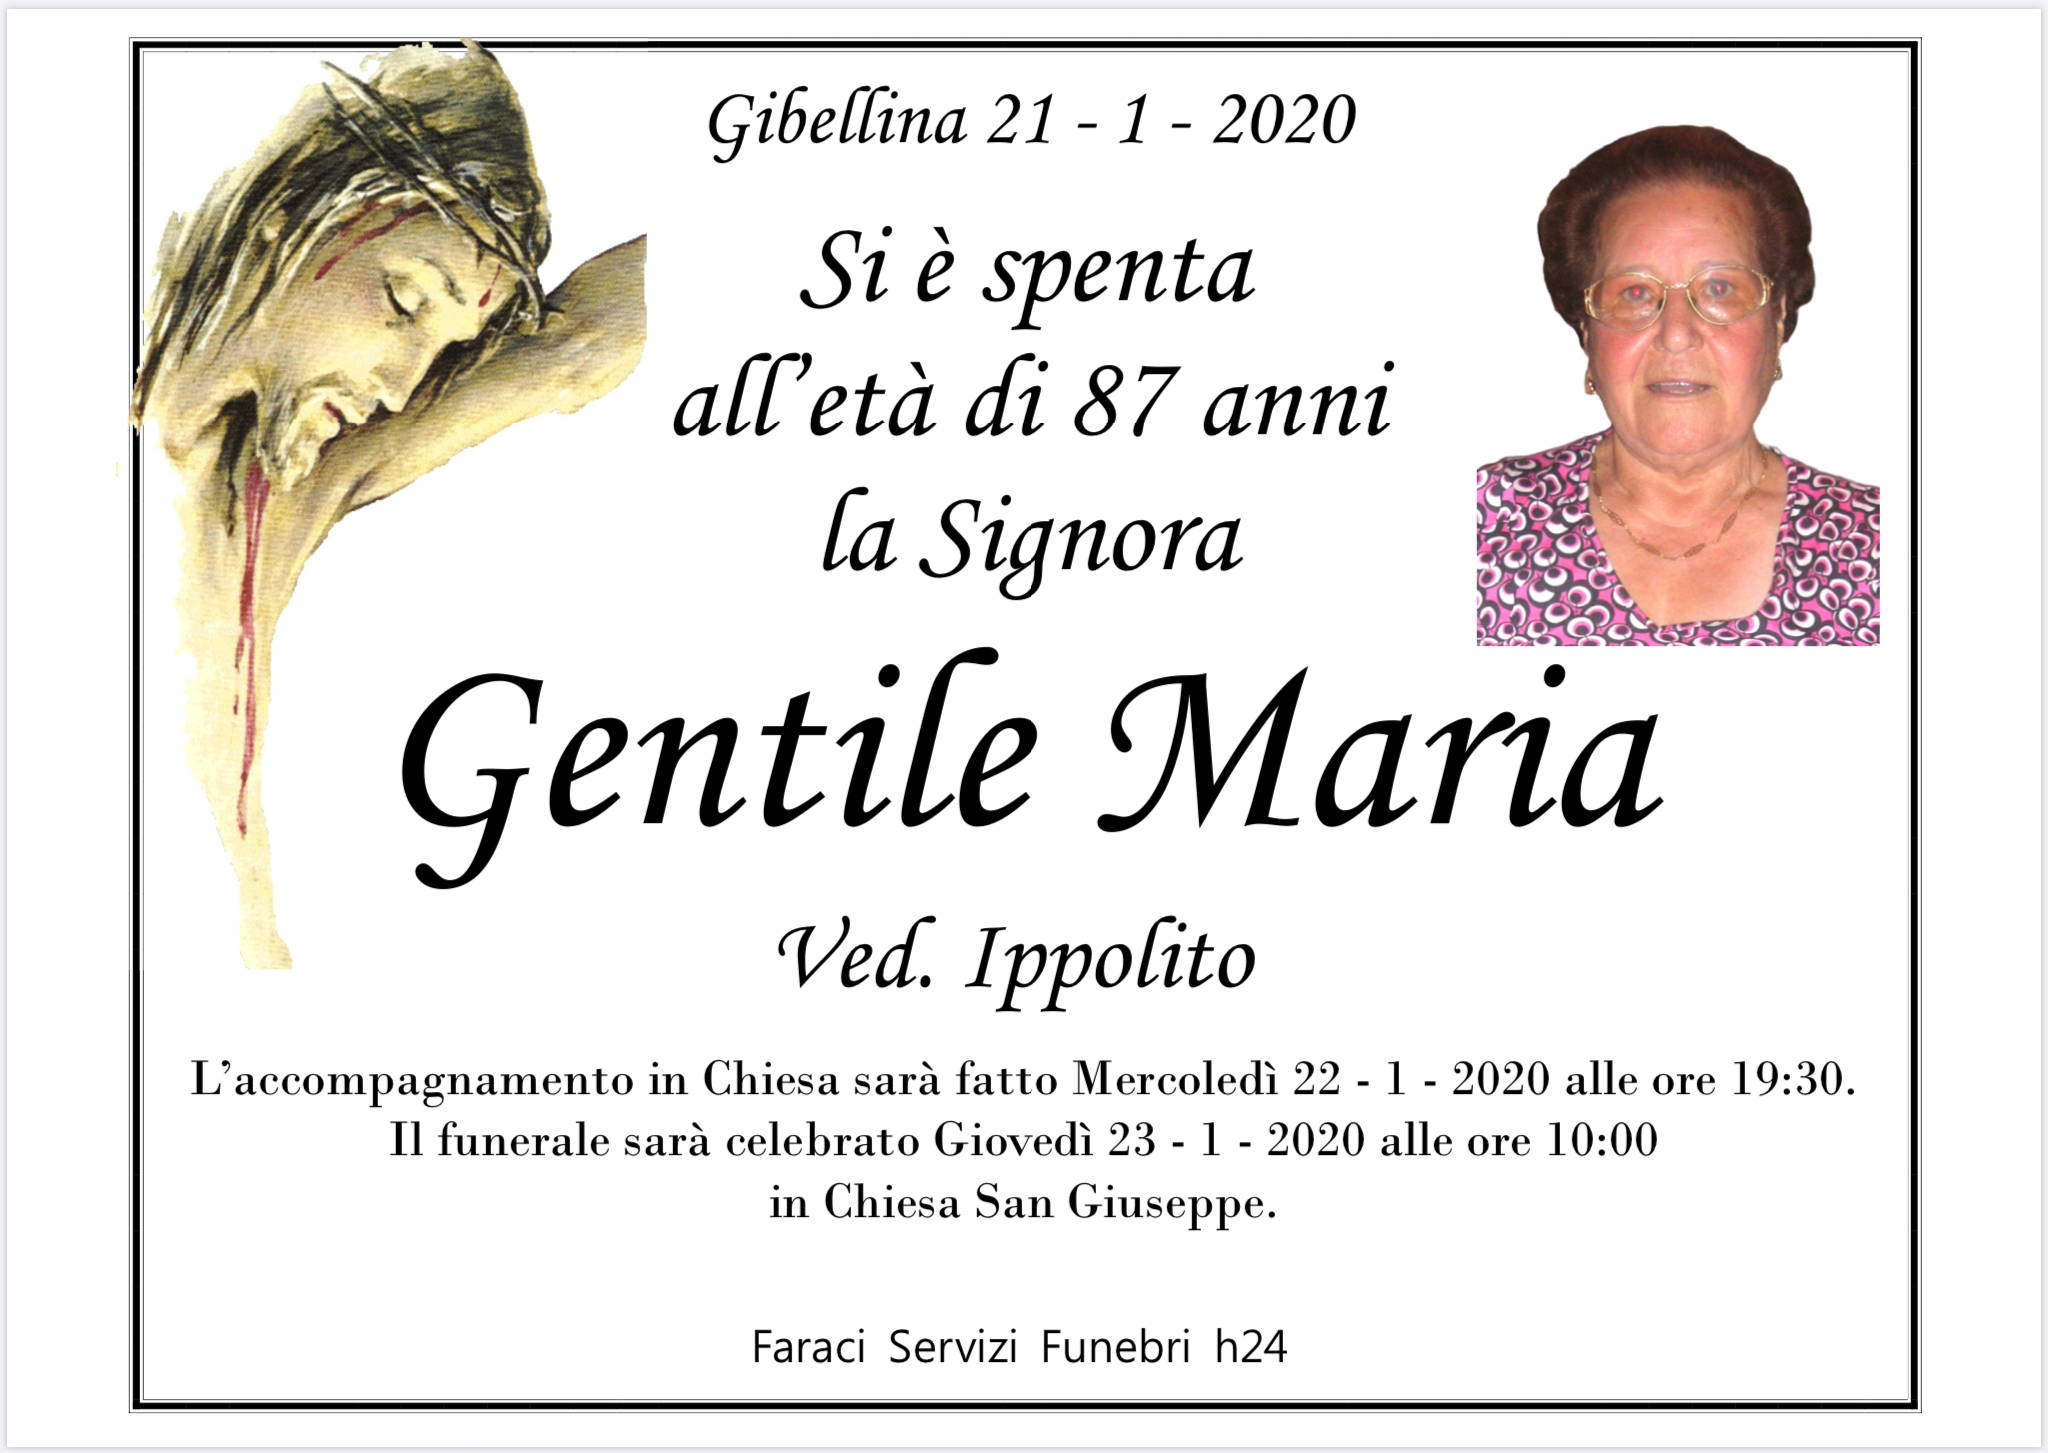 Maria Gentile